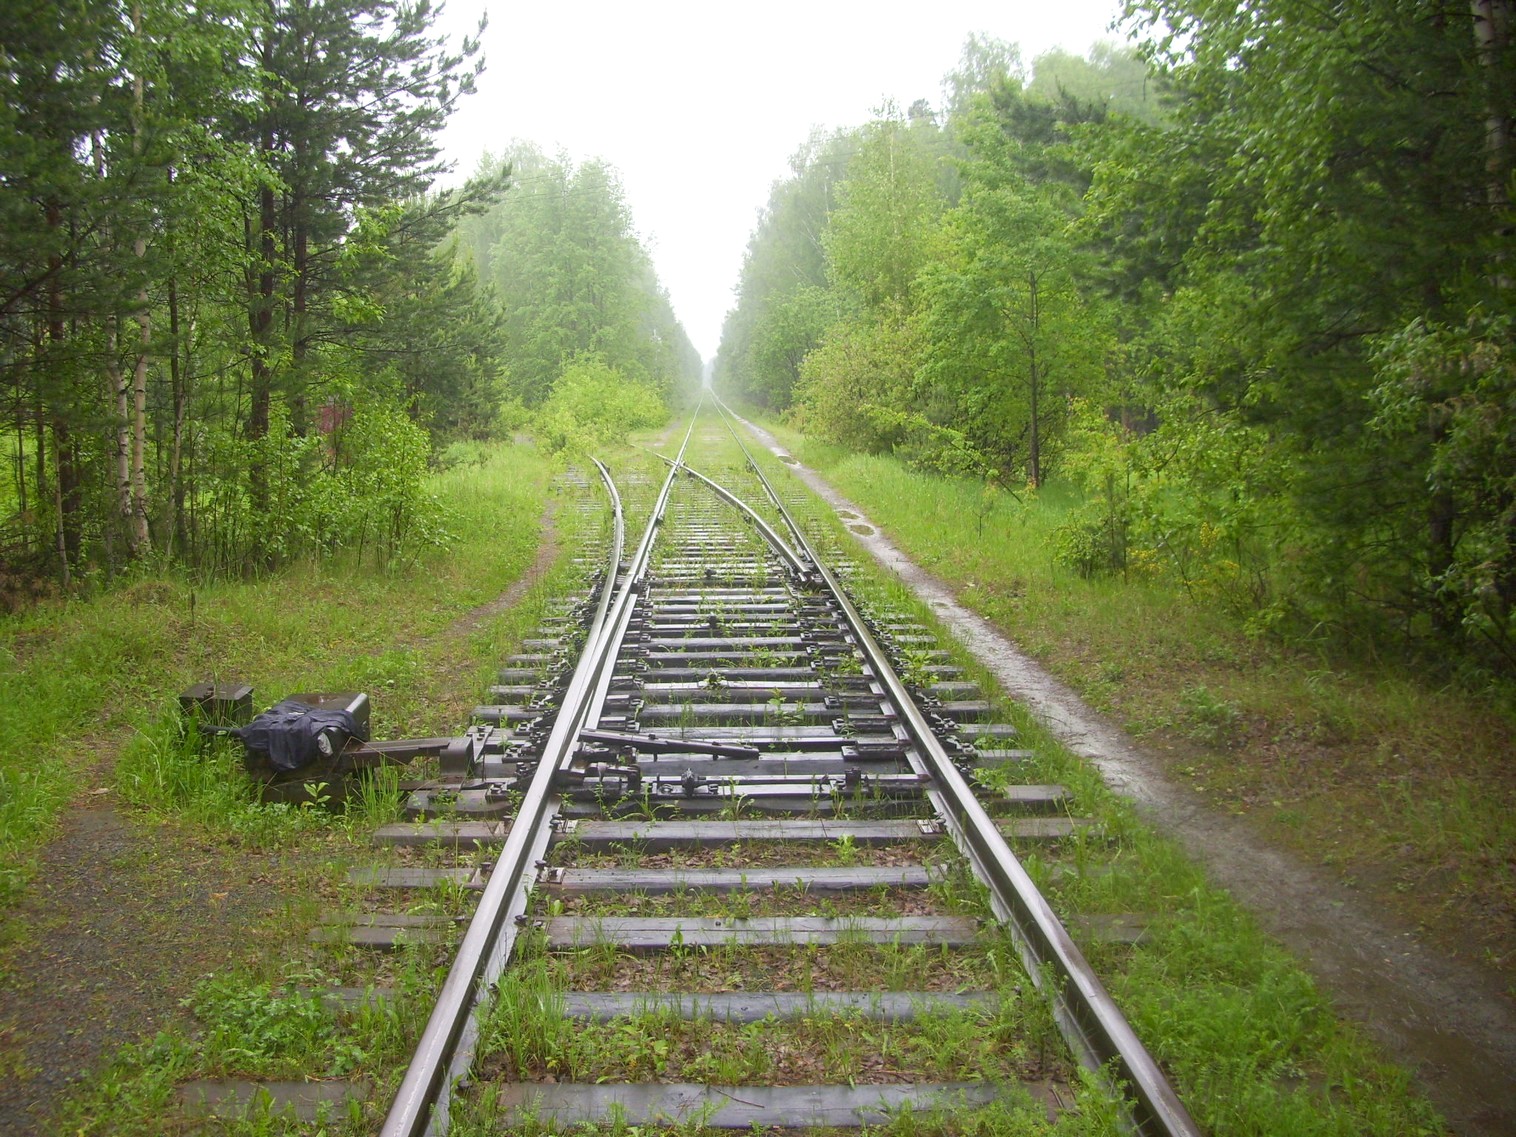 Железнодорожная линия предприятия железнодорожного транспорта завода «Уралмаш»  —  фотографии, сделанные в 2010 году (часть 4)